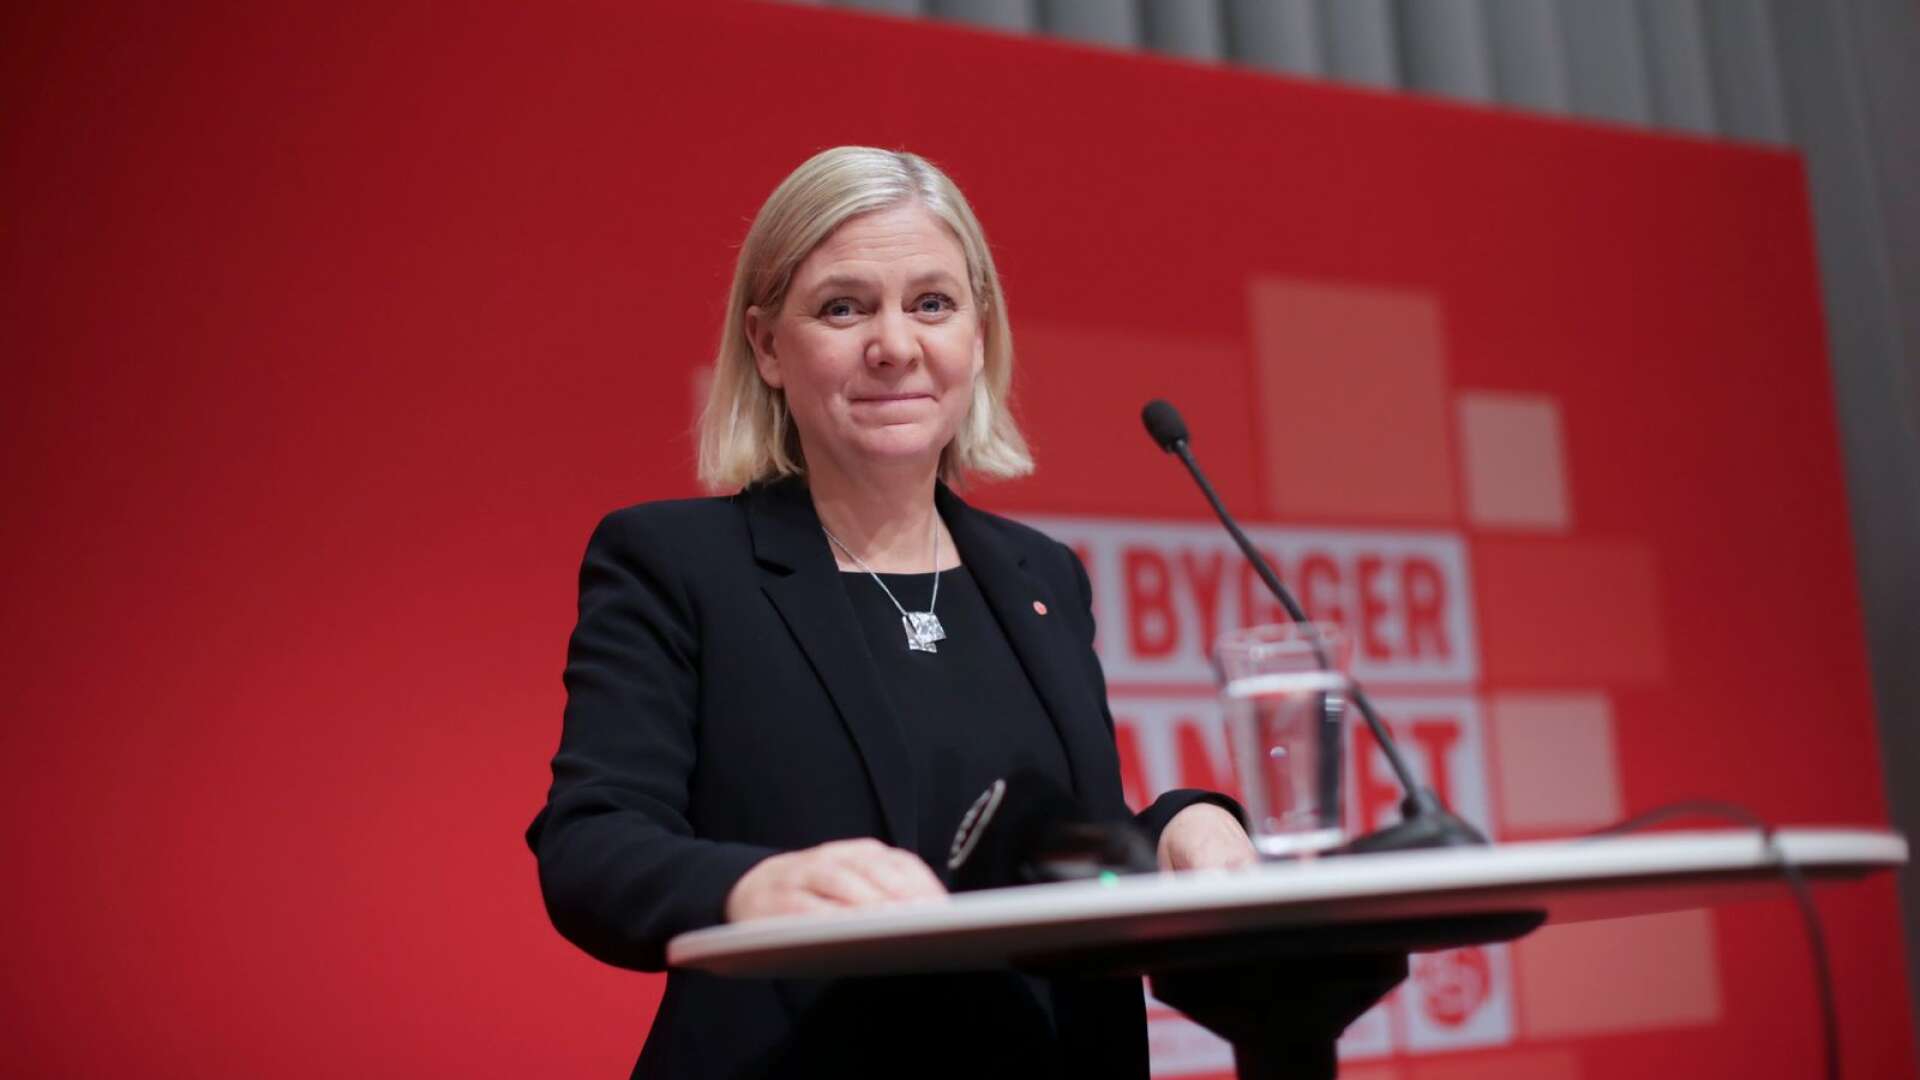 &quot;Det är visserligen positivt att Sverige nu äntligen verkar få en kvinna som statsminister, men den socialdemokratiska politiken har naturligtvis inte förändrats&quot;, skriver Arman Teimouri.